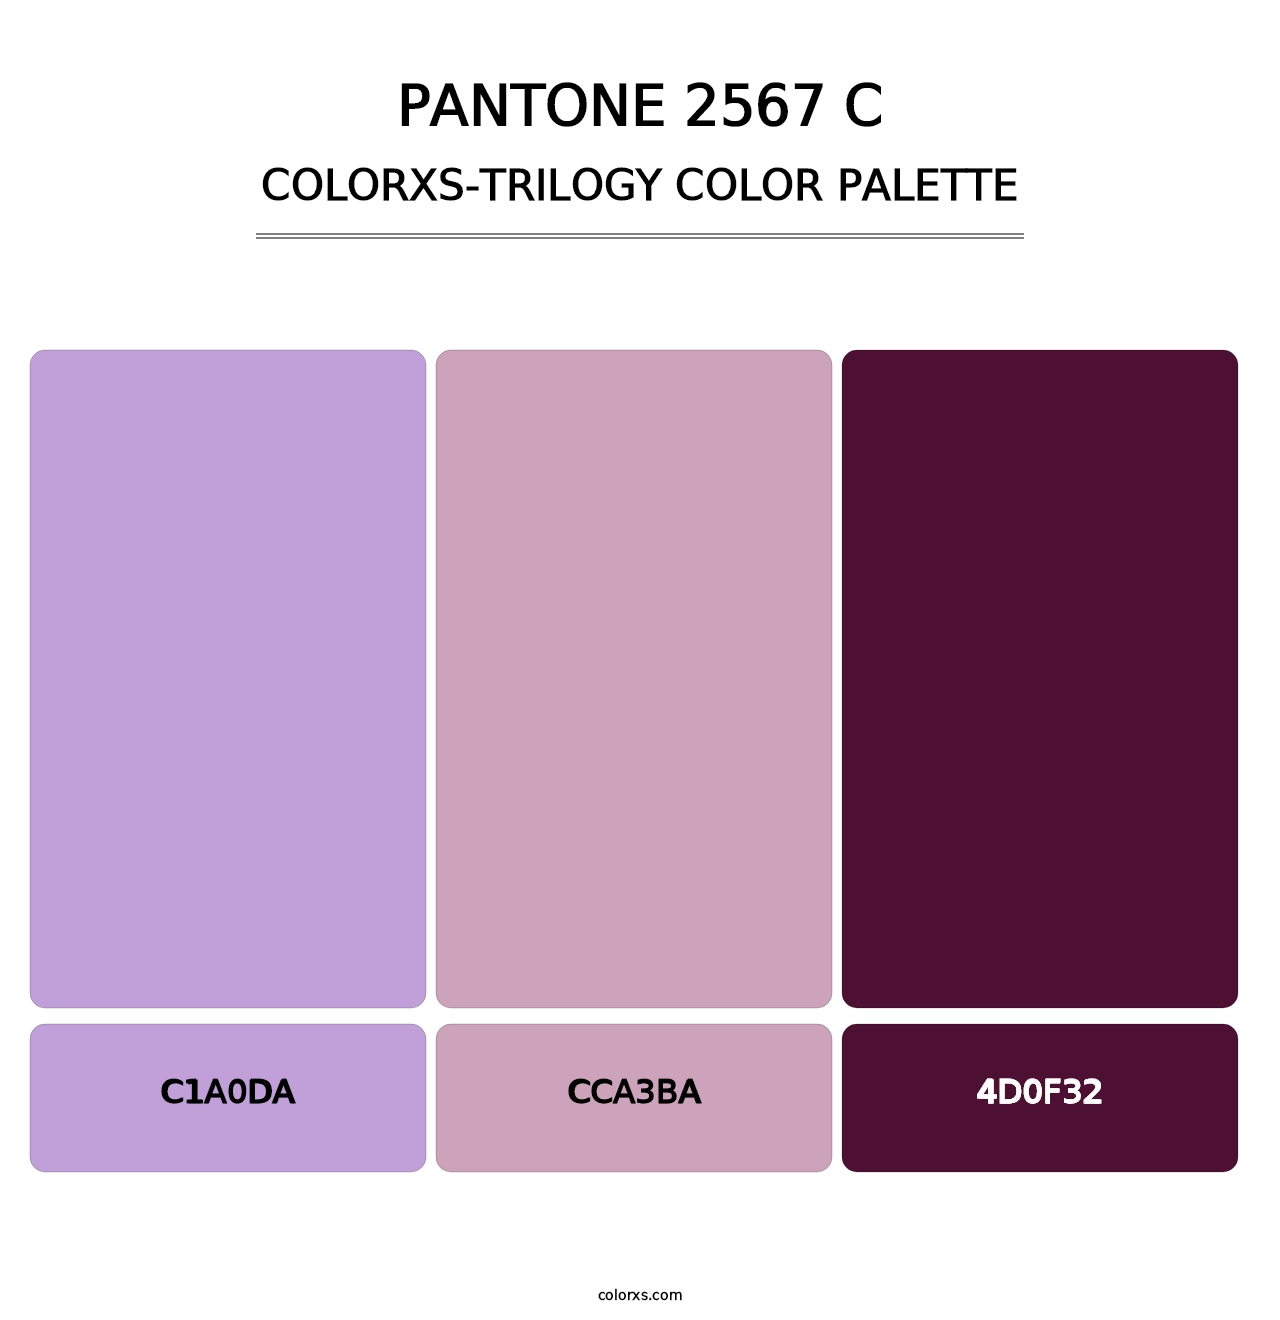 PANTONE 2567 C - Colorxs Trilogy Palette